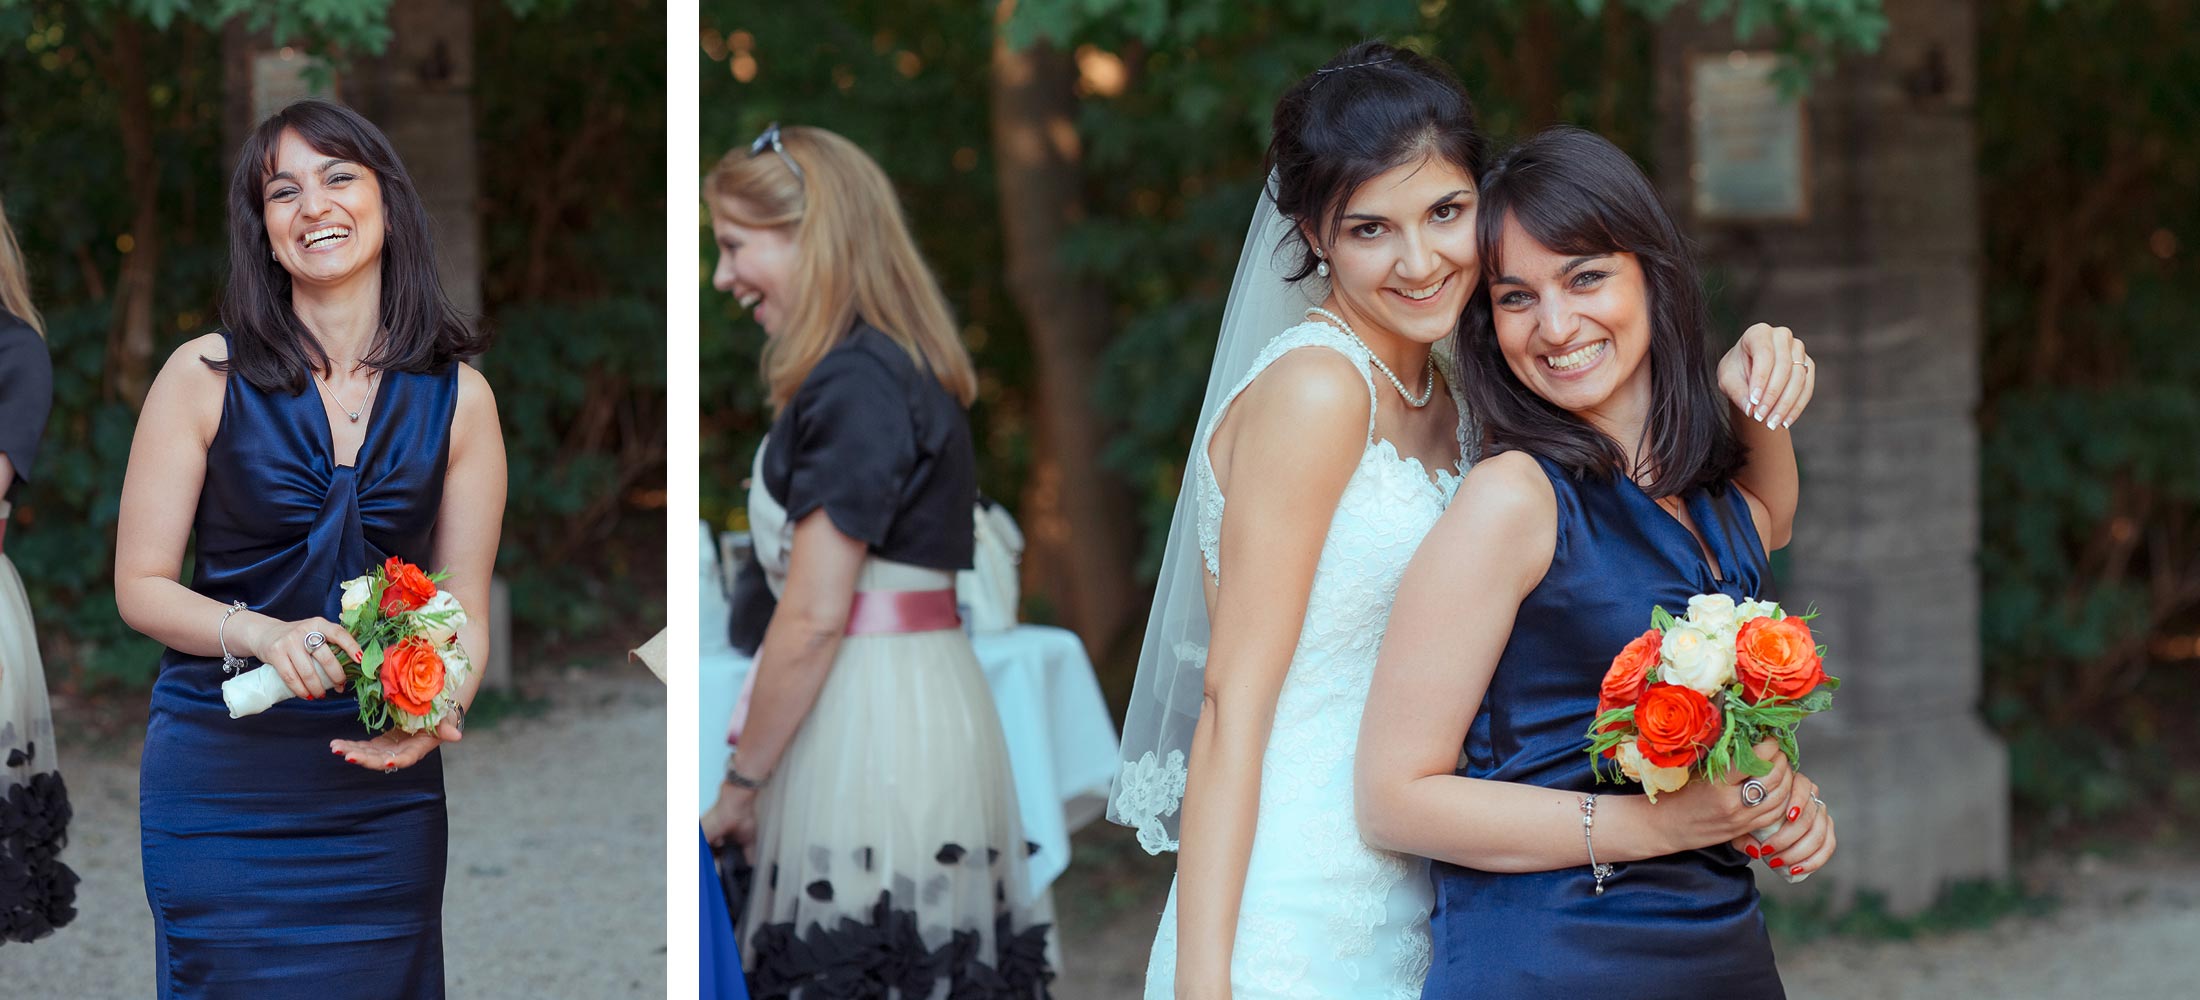 Романтическая свадьба – сколько стоит фотограф для свадьбы